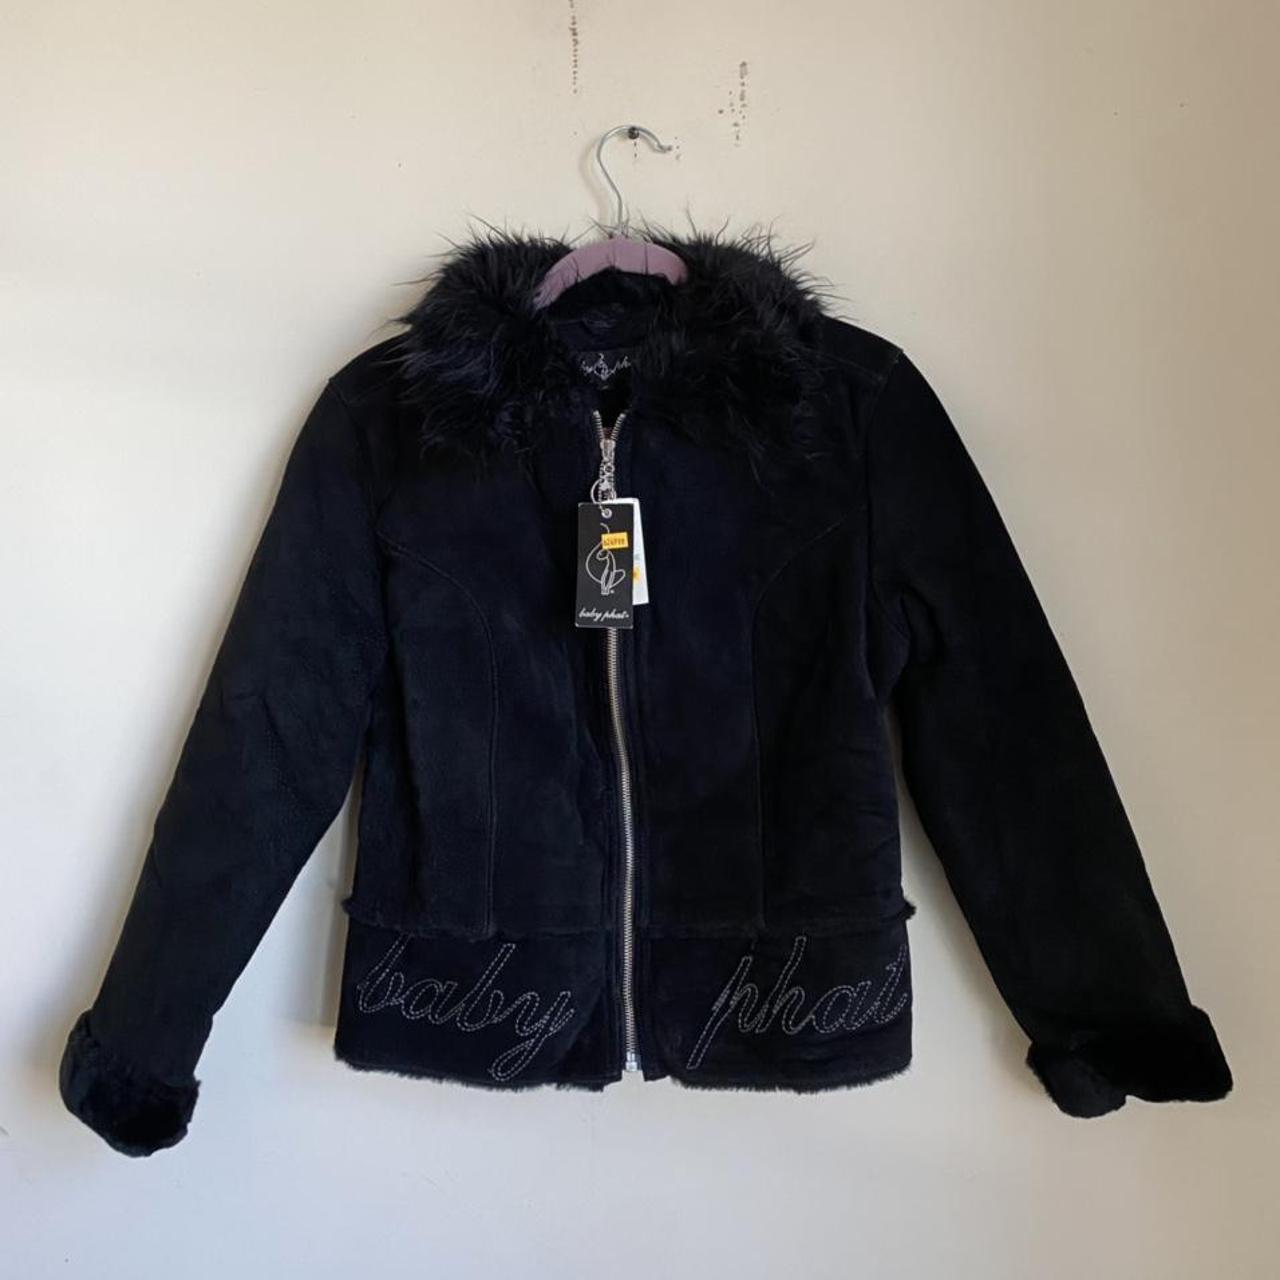 Vintage Baby phat leather jacket Y2K... - Depop